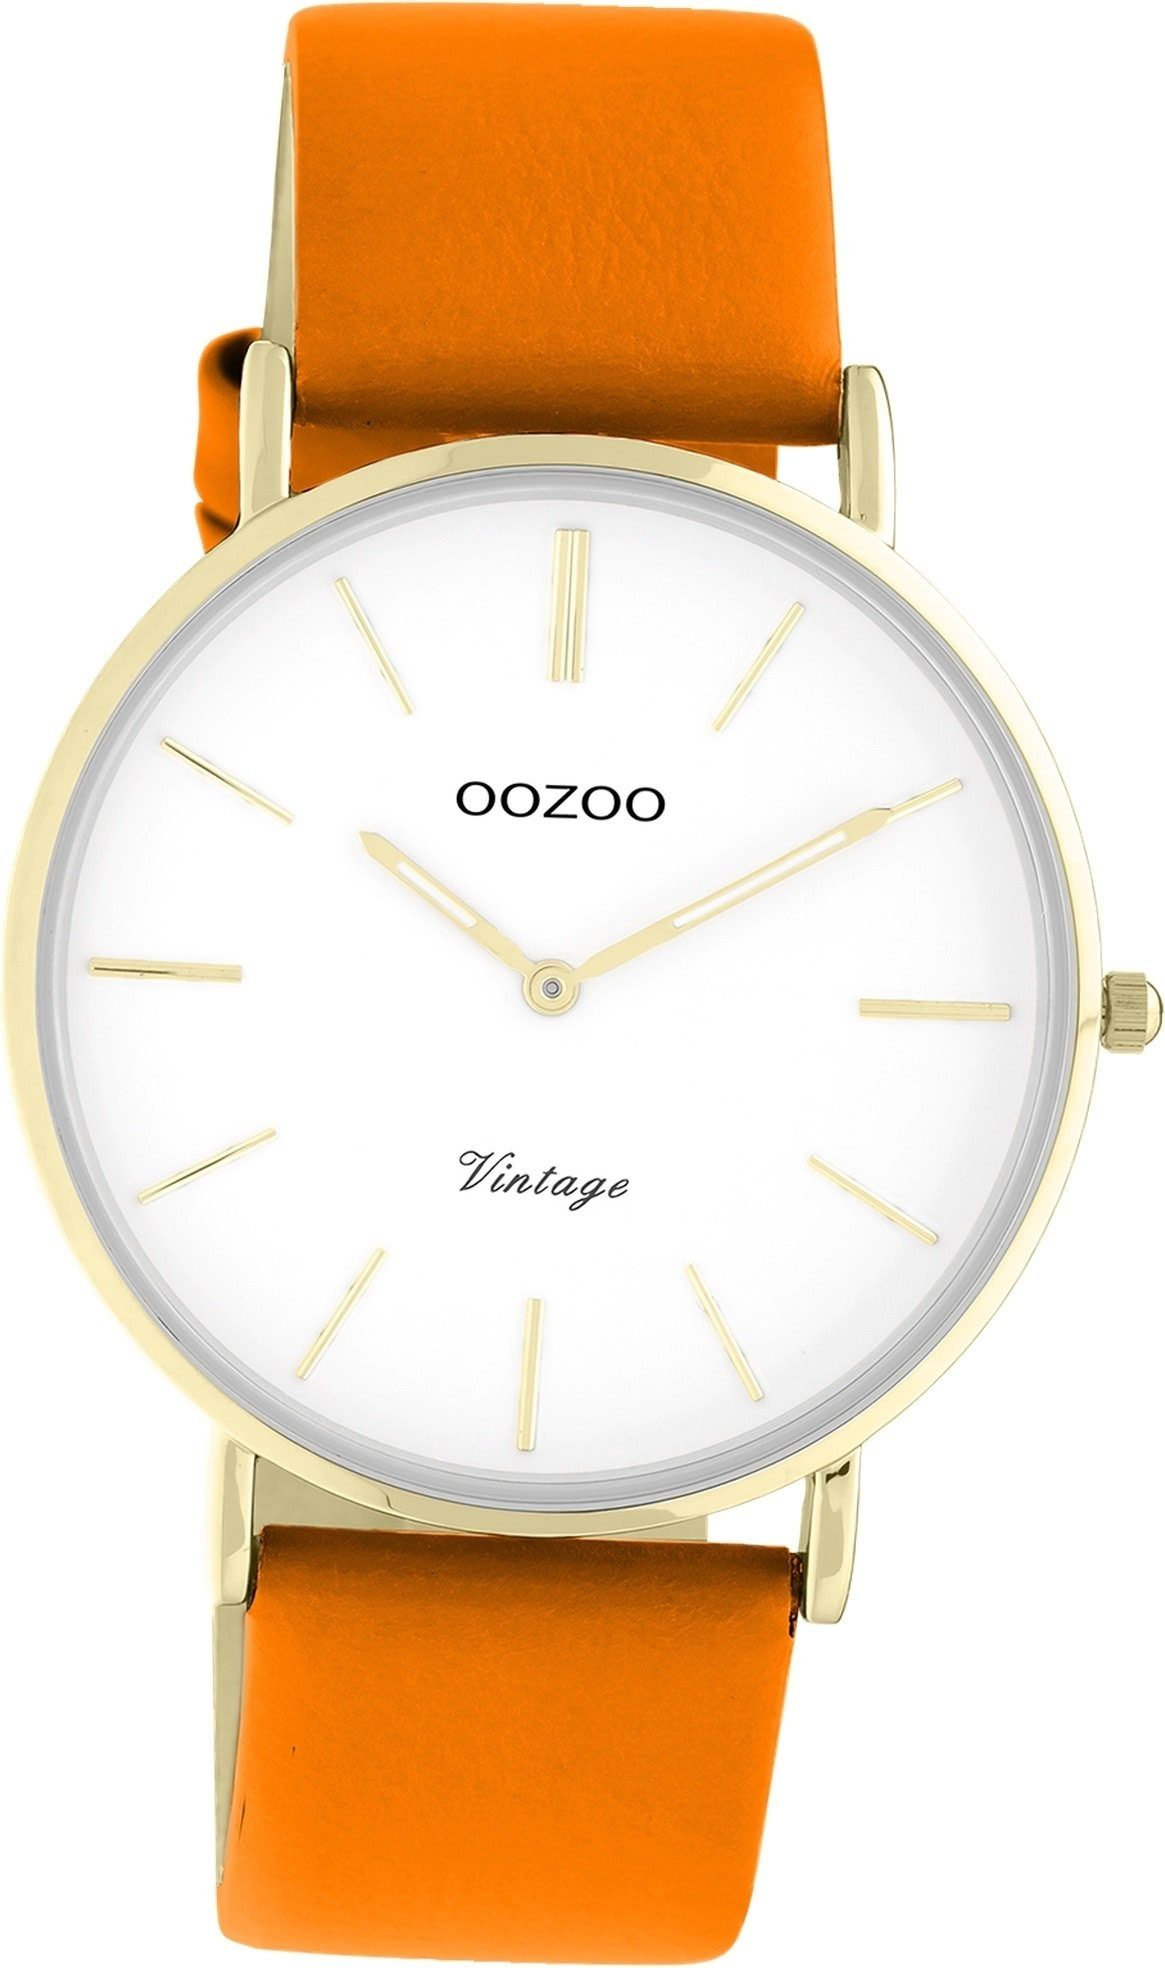 OOZOO Quarzuhr Oozoo Damen Armbanduhr Vintage Series, Damenuhr Lederarmband orange, rundes Gehäuse, groß (ca. 40mm)